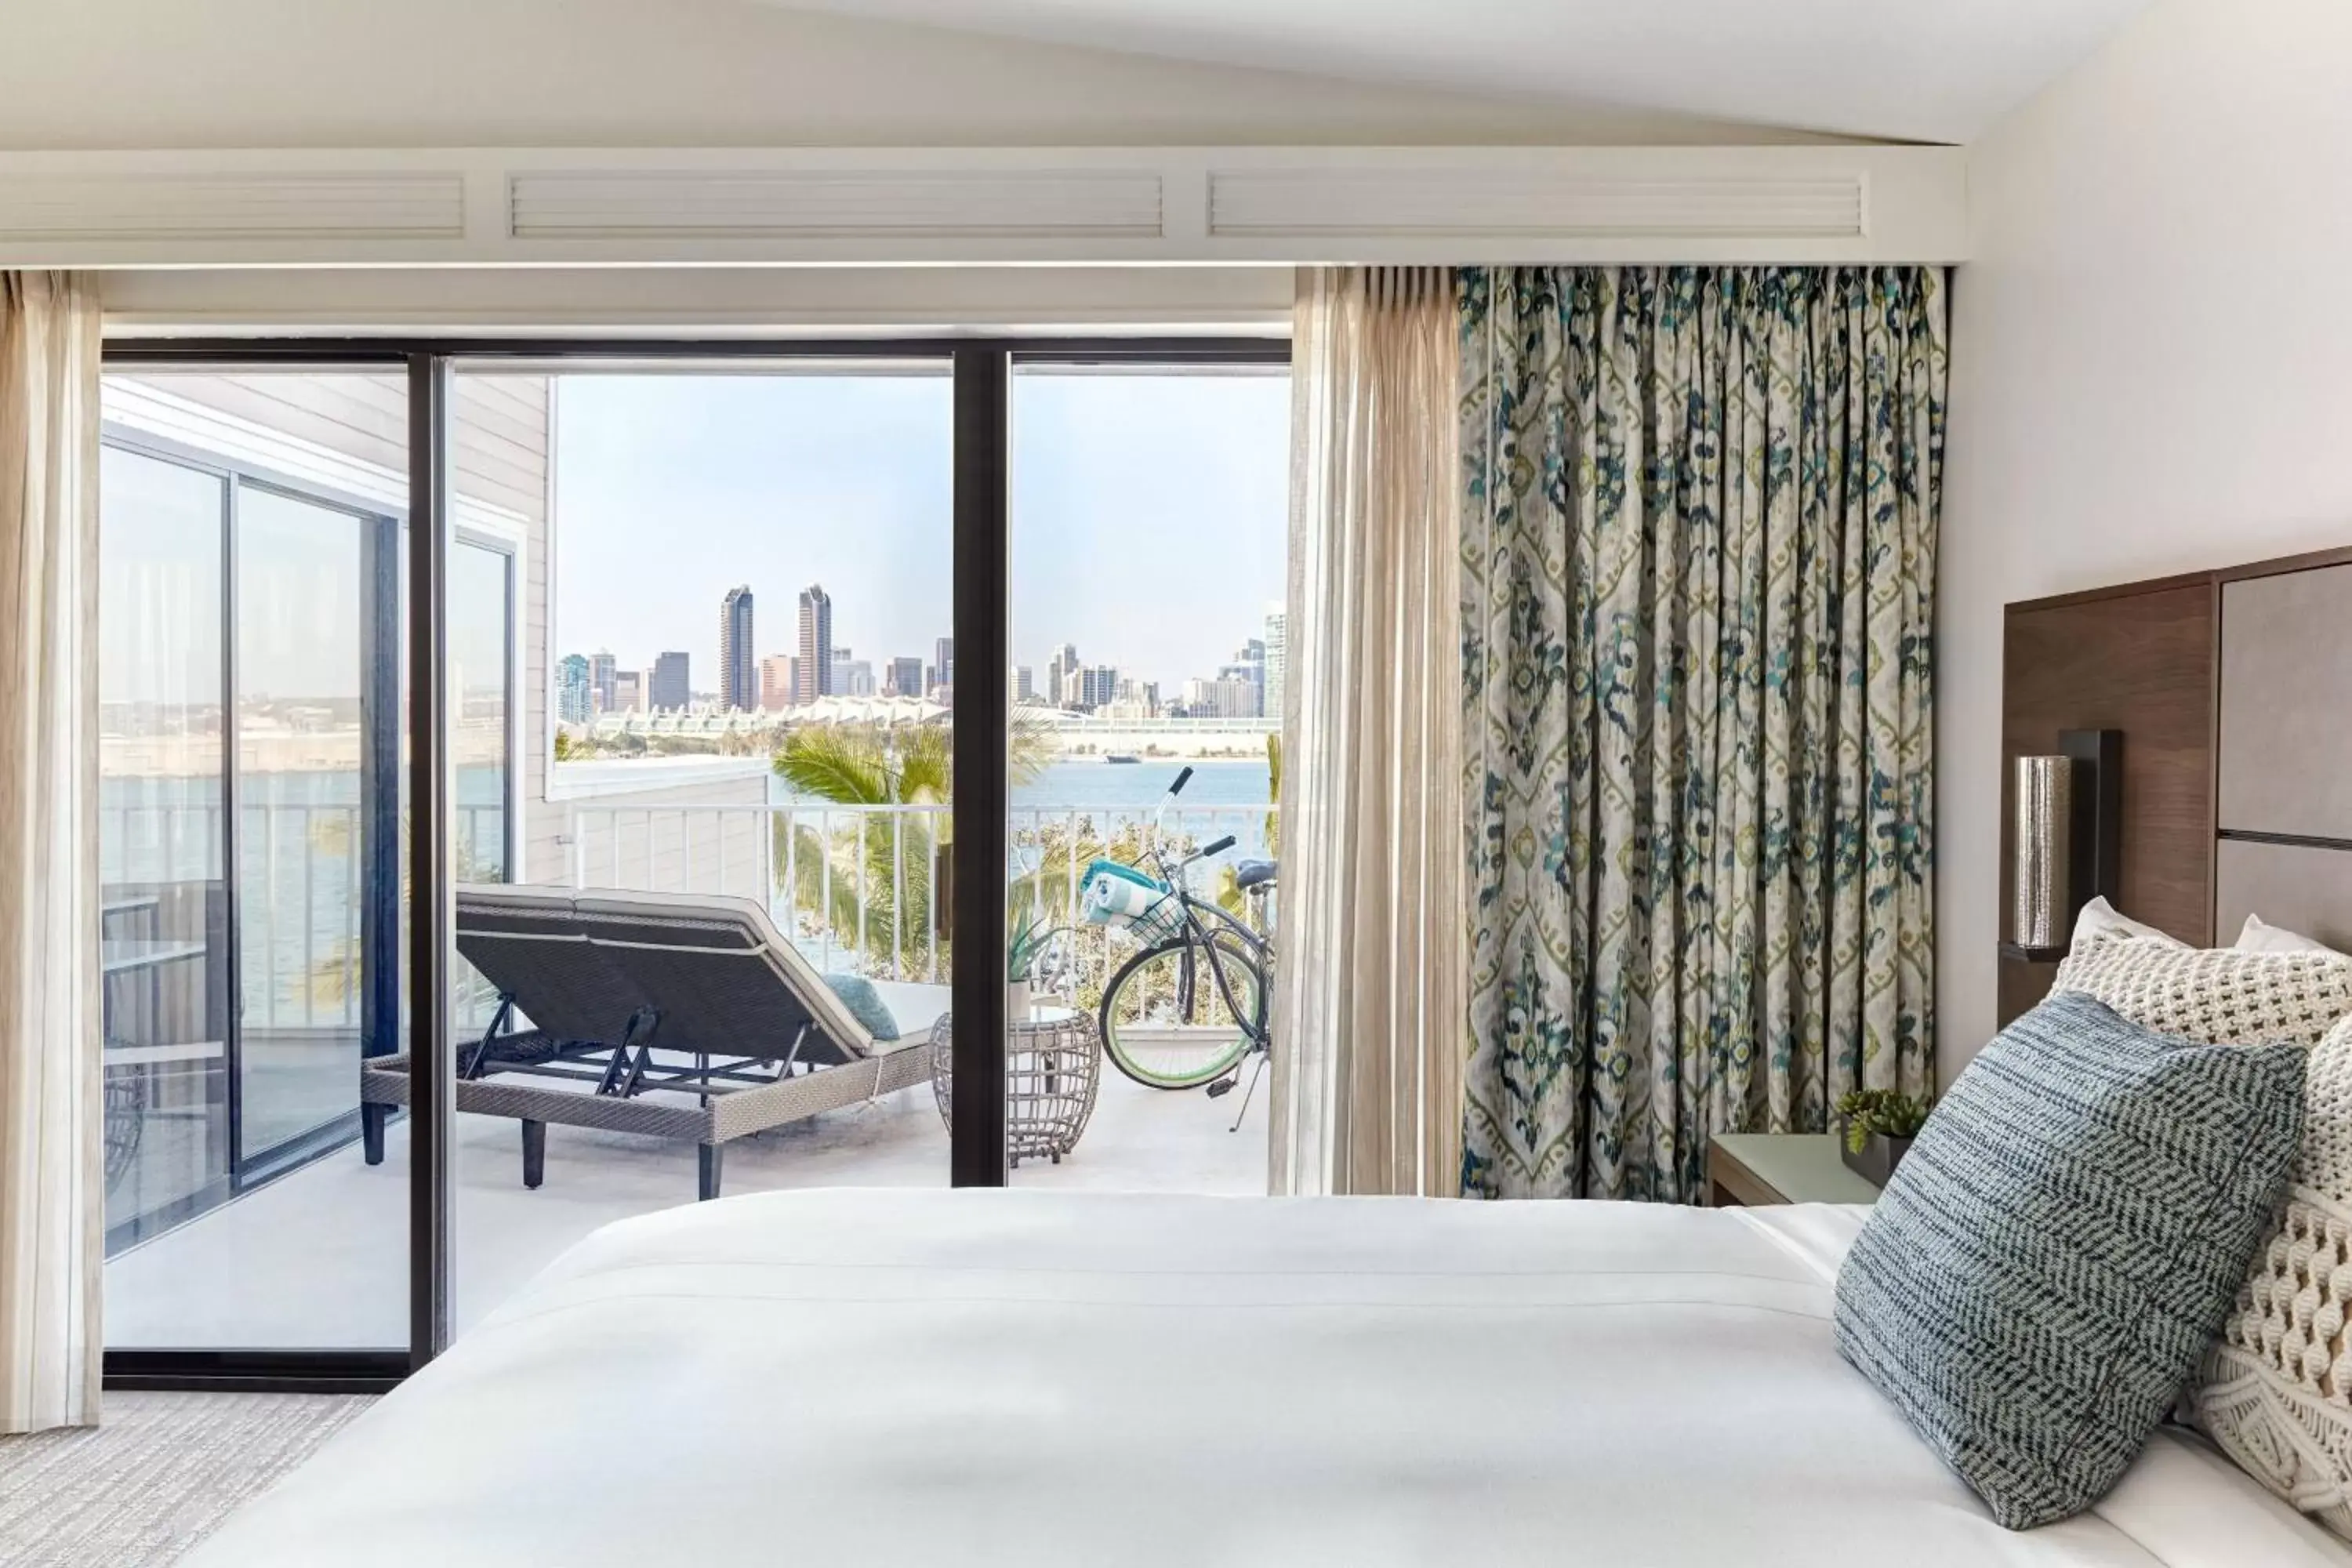 Bedroom in Coronado Island Marriott Resort & Spa